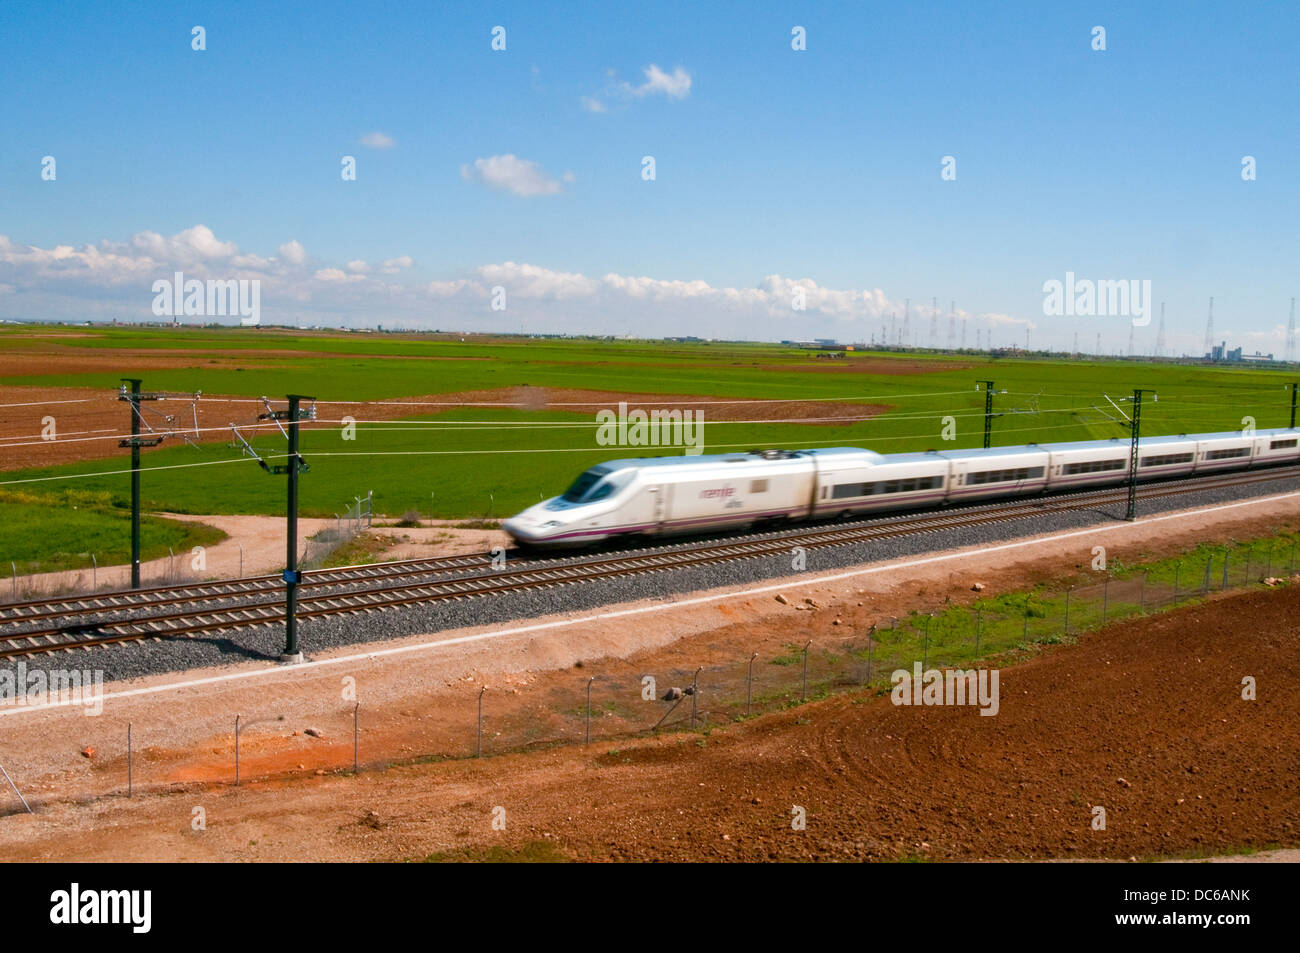 Madrid-Valencia high-speed train traveling along the country. Ocaña, Toledo province, Castilla La Mancha, Spain. Stock Photo